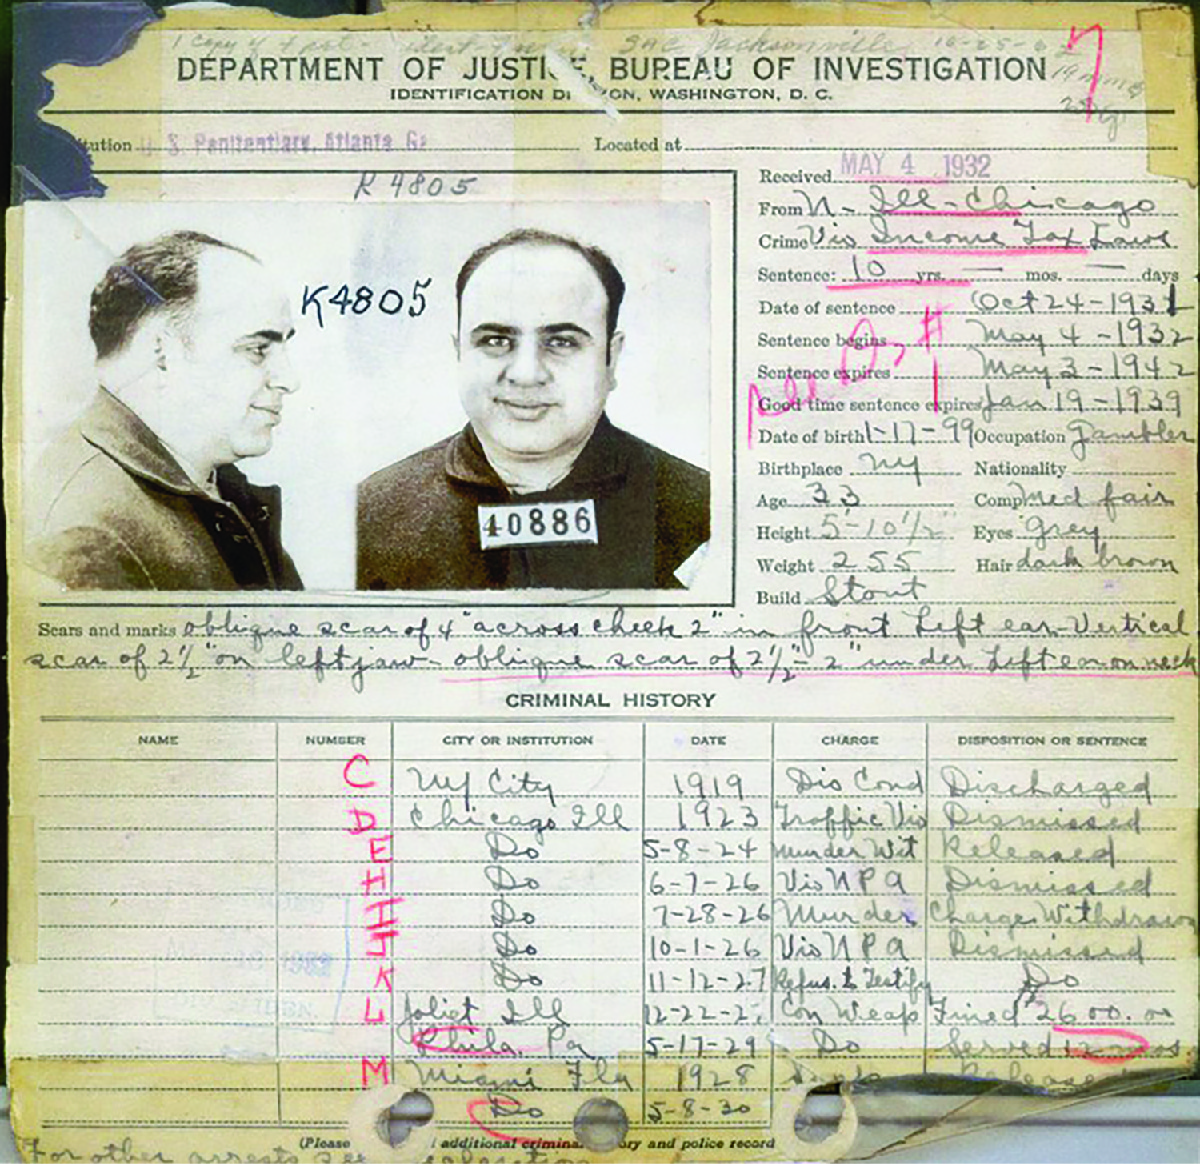 联邦调查局1932年对Al Capone的犯罪记录显示了对他的许多指控，其中大部分被驳回。